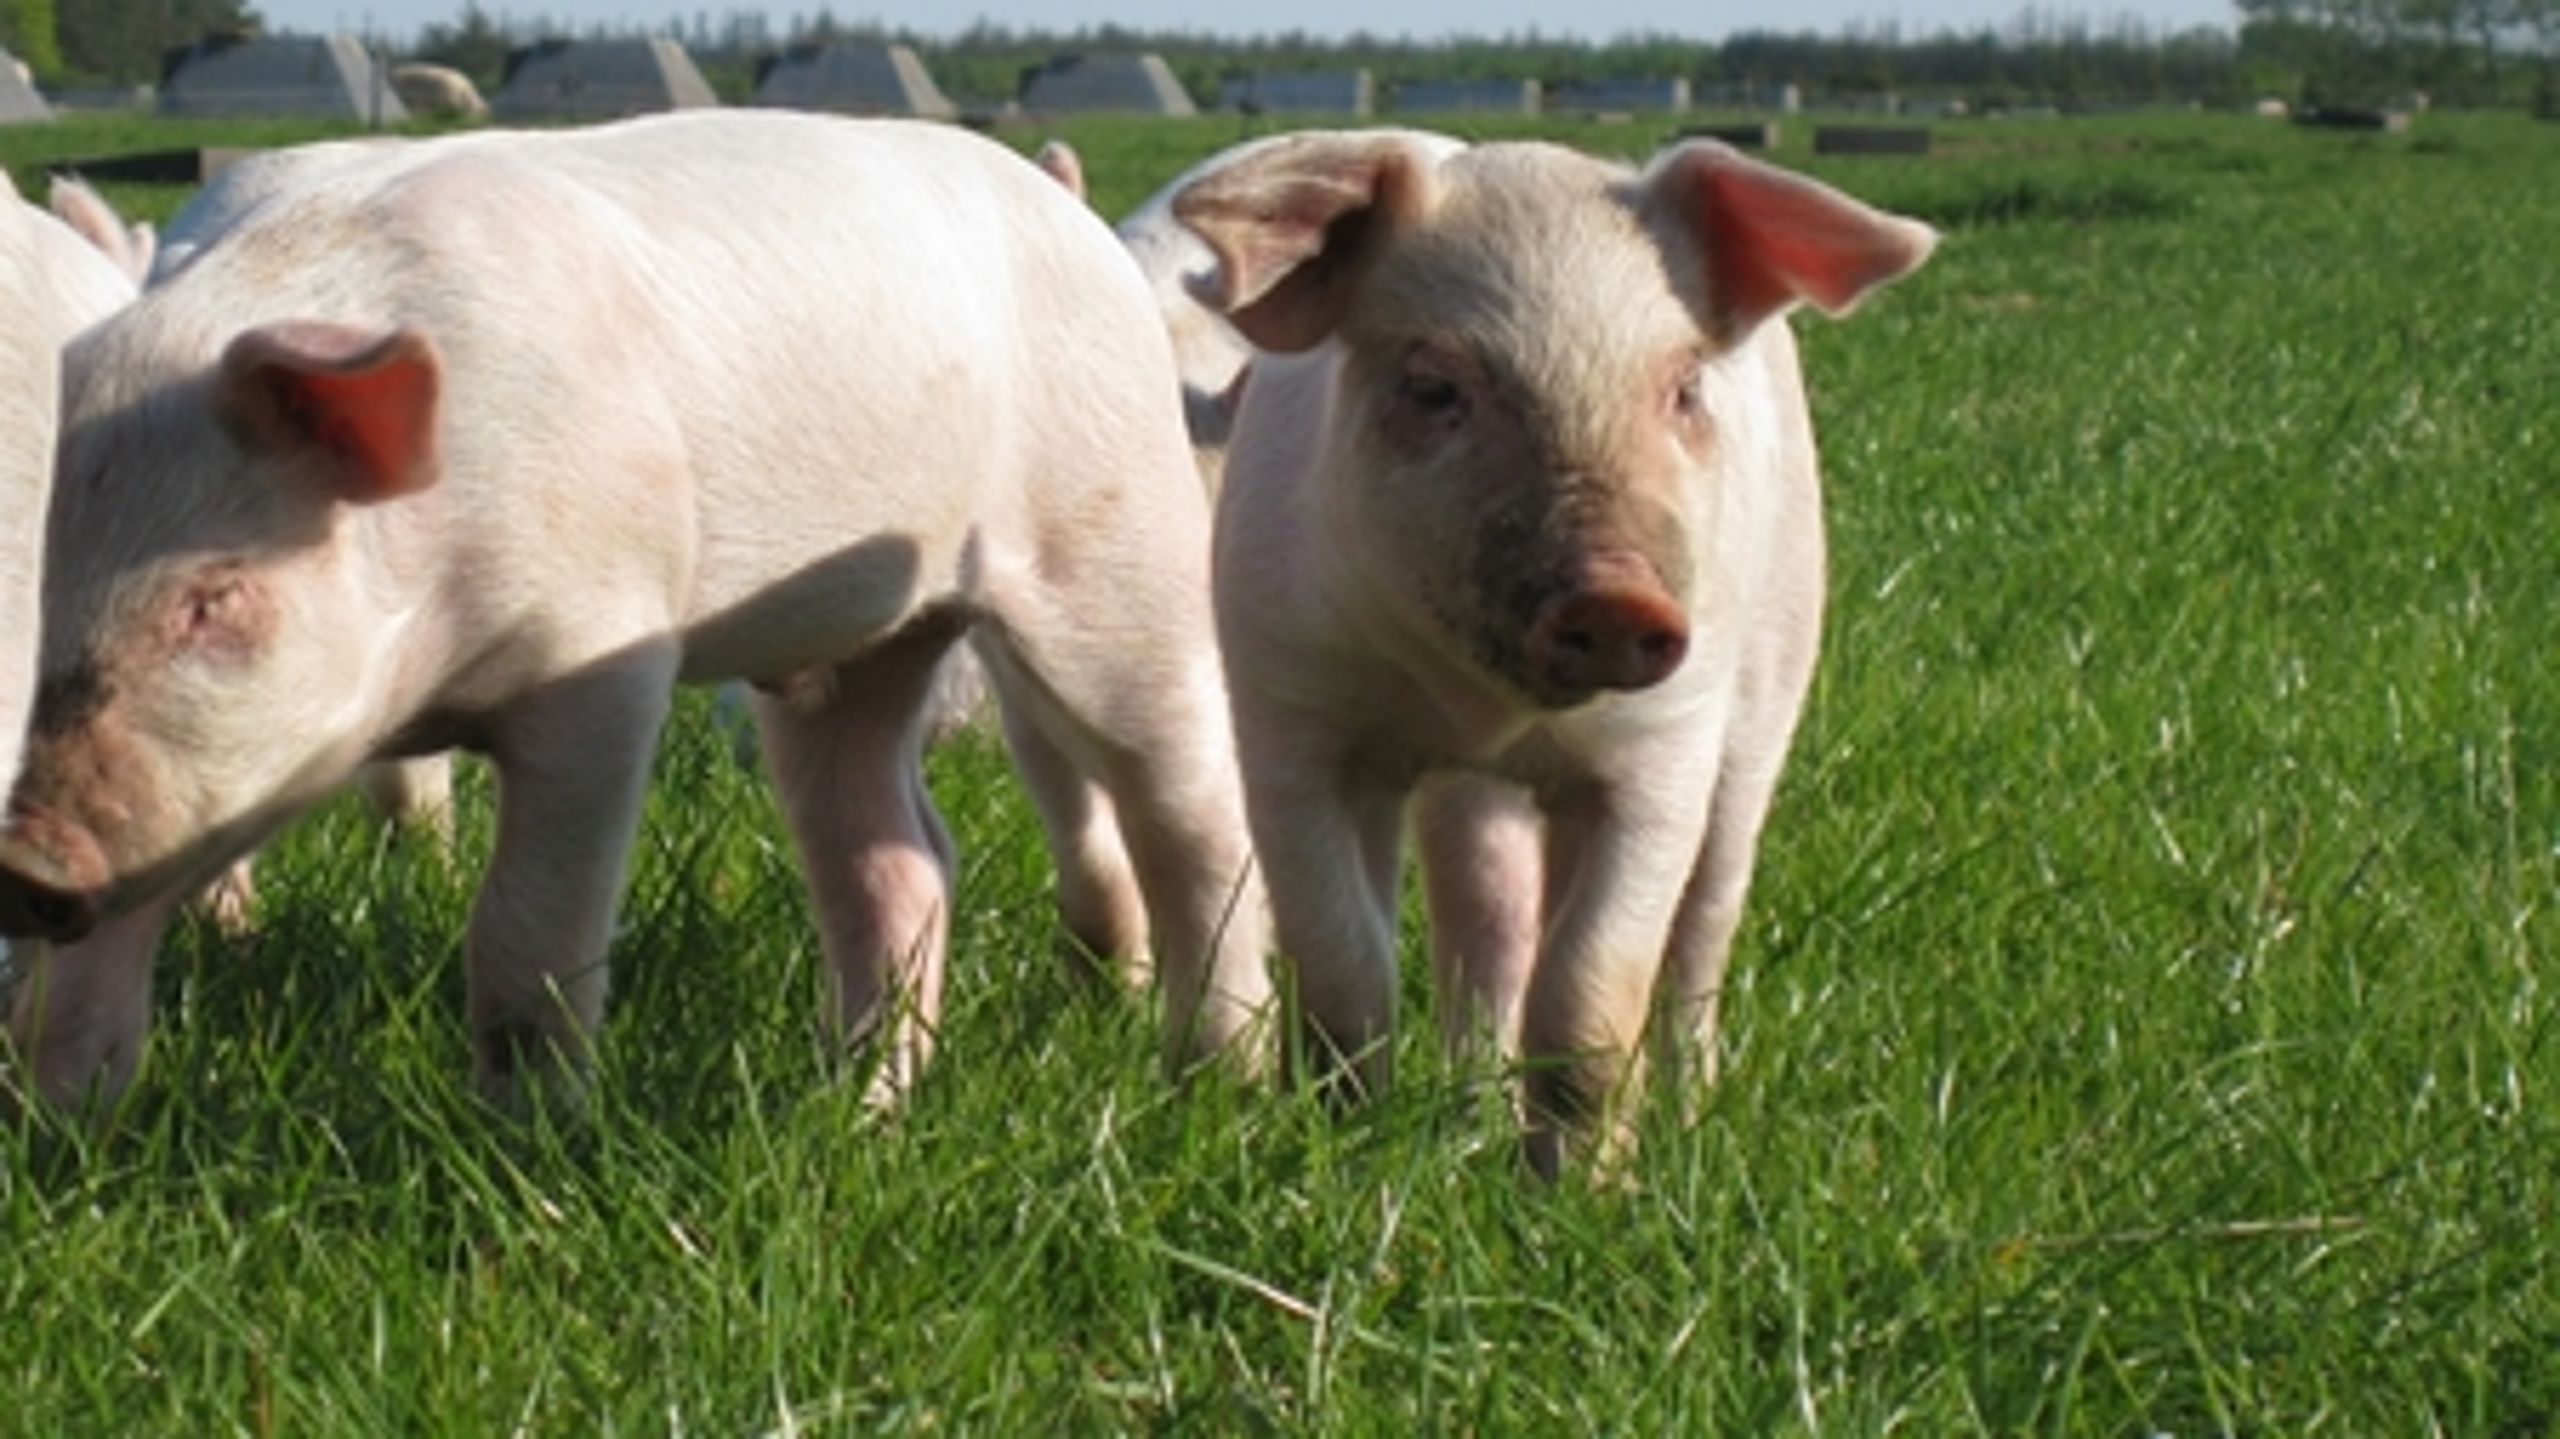 Omlægning til eksempelvis økologisk svineproduktion kræver støtte. Og det er noget, regeringen kan overveje at tage op, når dens økologiske handlingsplan skal revideres.